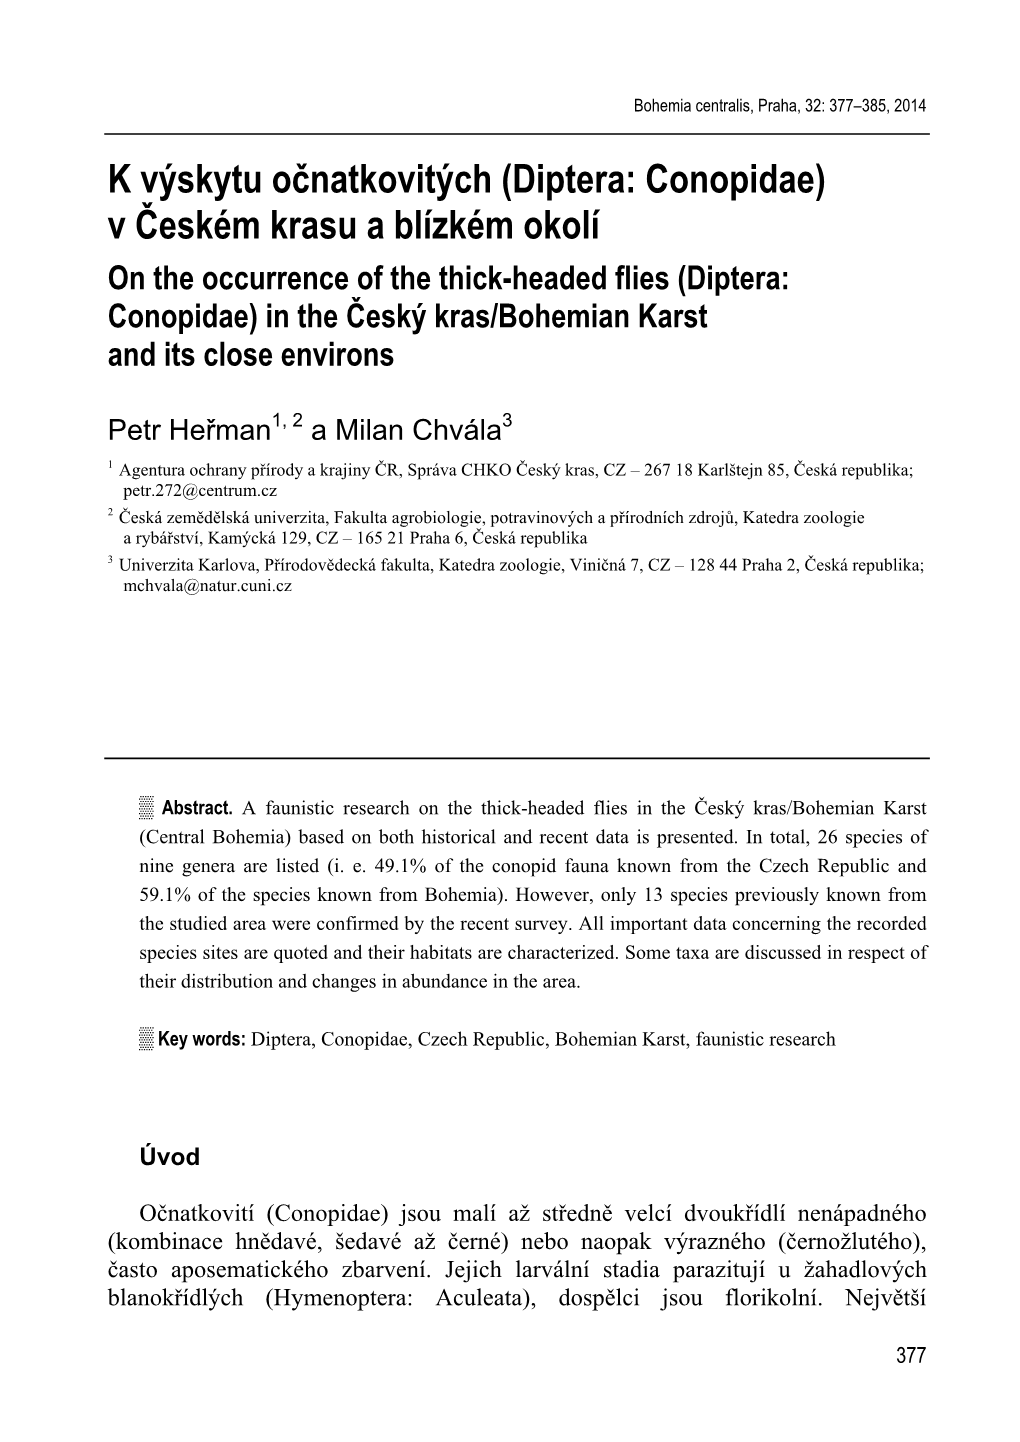 V Českém Krasu a Blízkém Okolí on the Occurrence of the Thick-Headed Flies (Diptera: Conopidae) in the Český Kras/Bohemian Karst and Its Close Environs